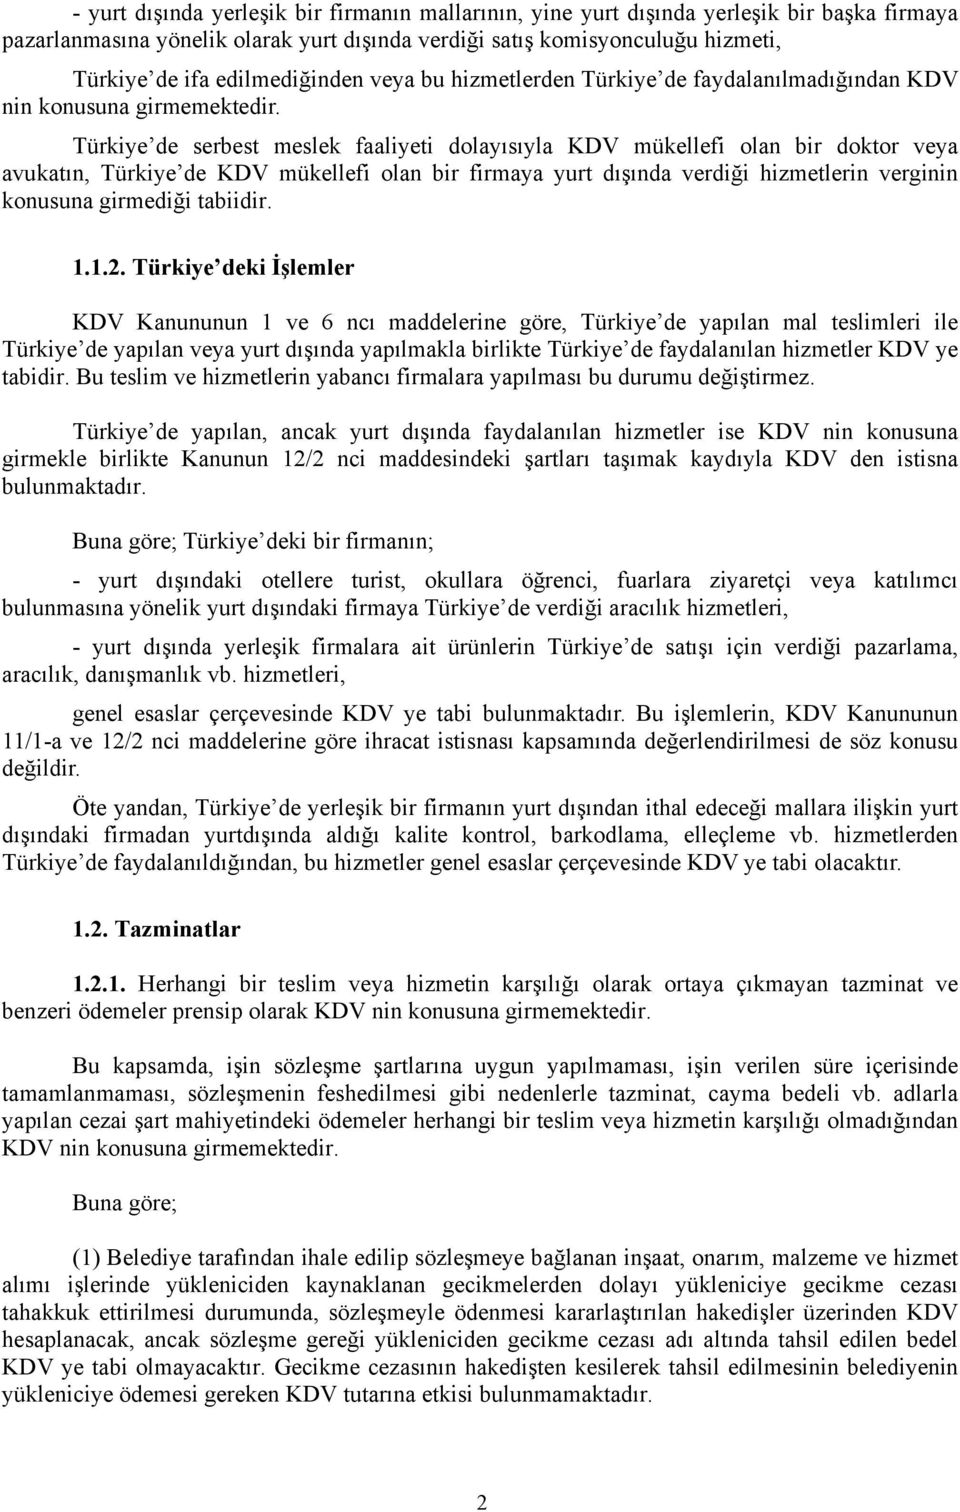 Türkiye de serbest meslek faaliyeti dolayısıyla KDV mükellefi olan bir doktor veya avukatın, Türkiye de KDV mükellefi olan bir firmaya yurt dışında verdiği hizmetlerin verginin konusuna girmediği